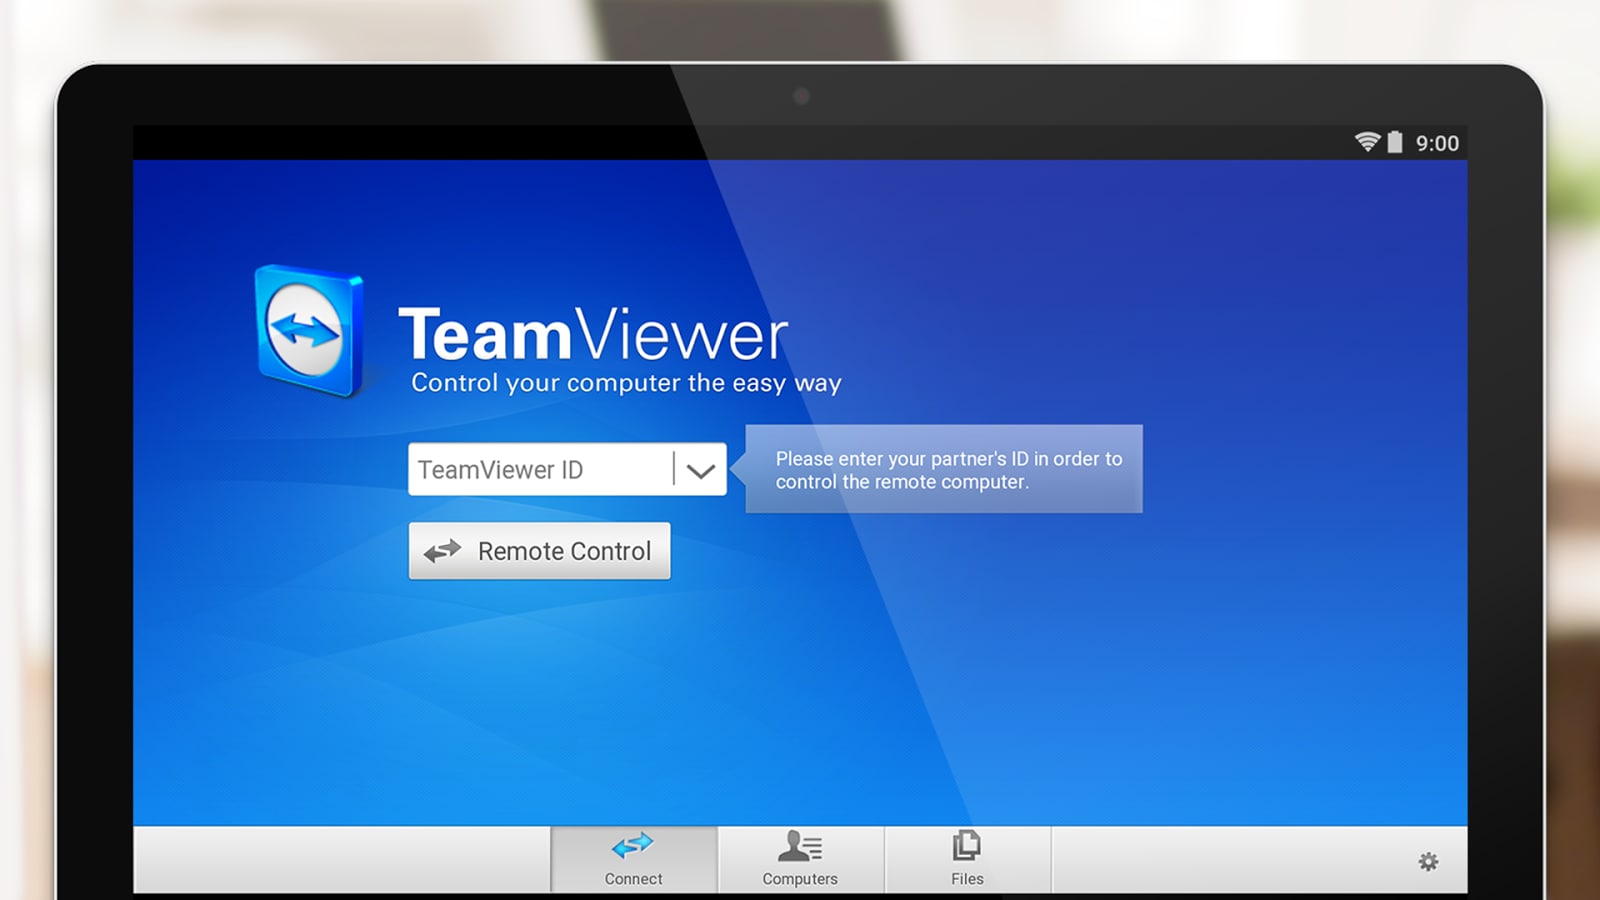 teamviewer mac 10.11 6 download